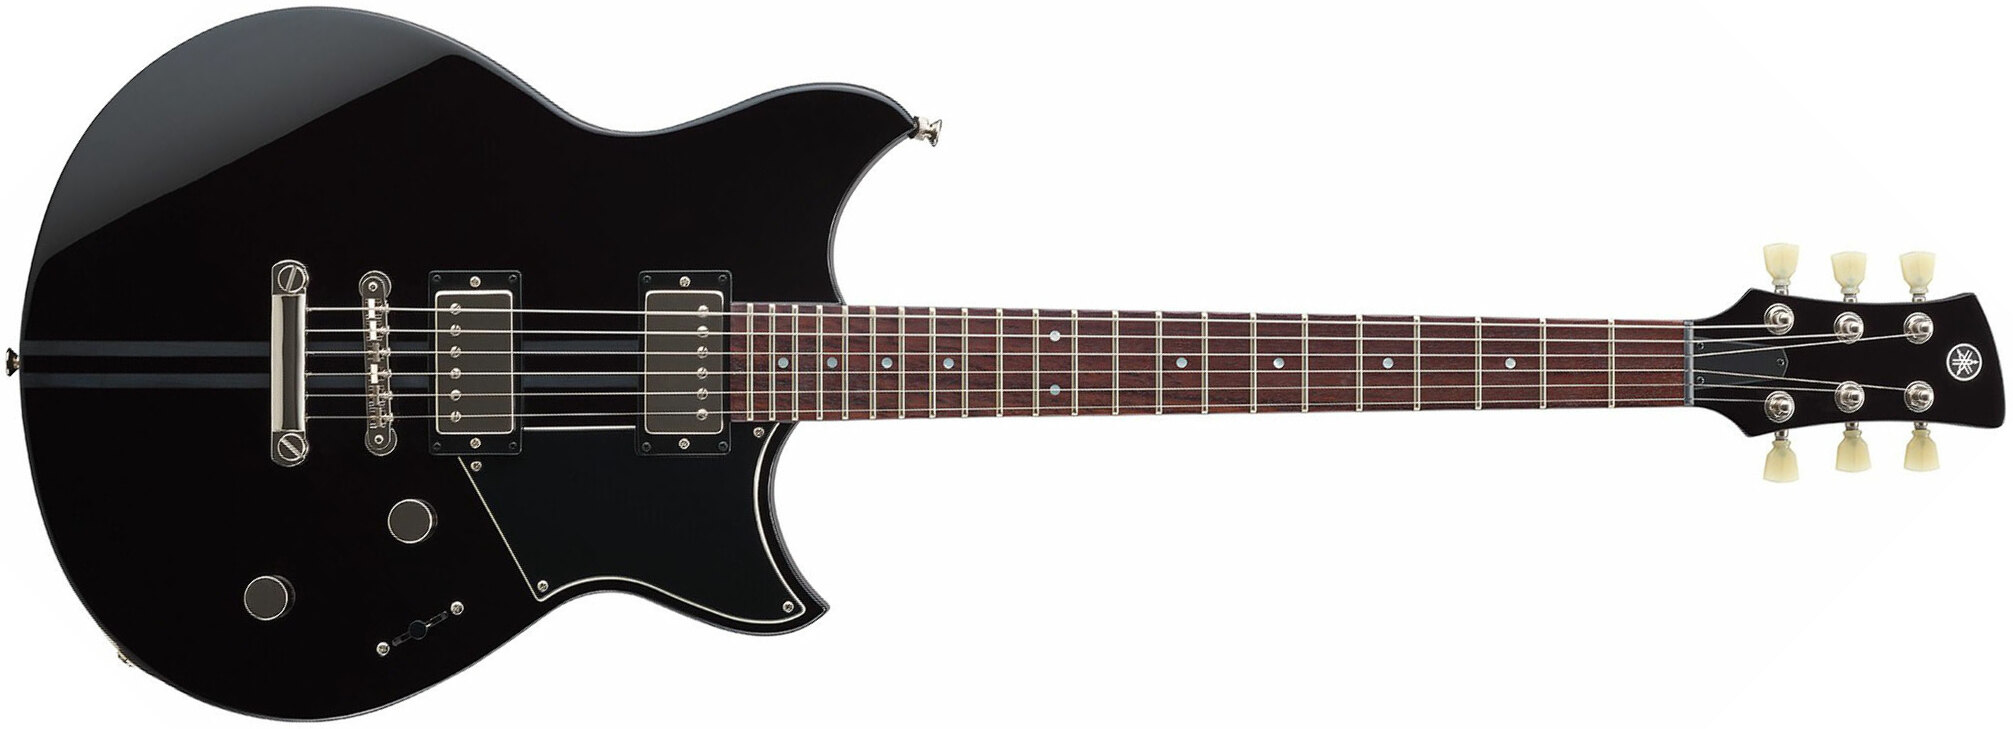 Yamaha Rse20 Revstar Element Hh Ht Rw - Black - Guitarra eléctrica de doble corte. - Main picture